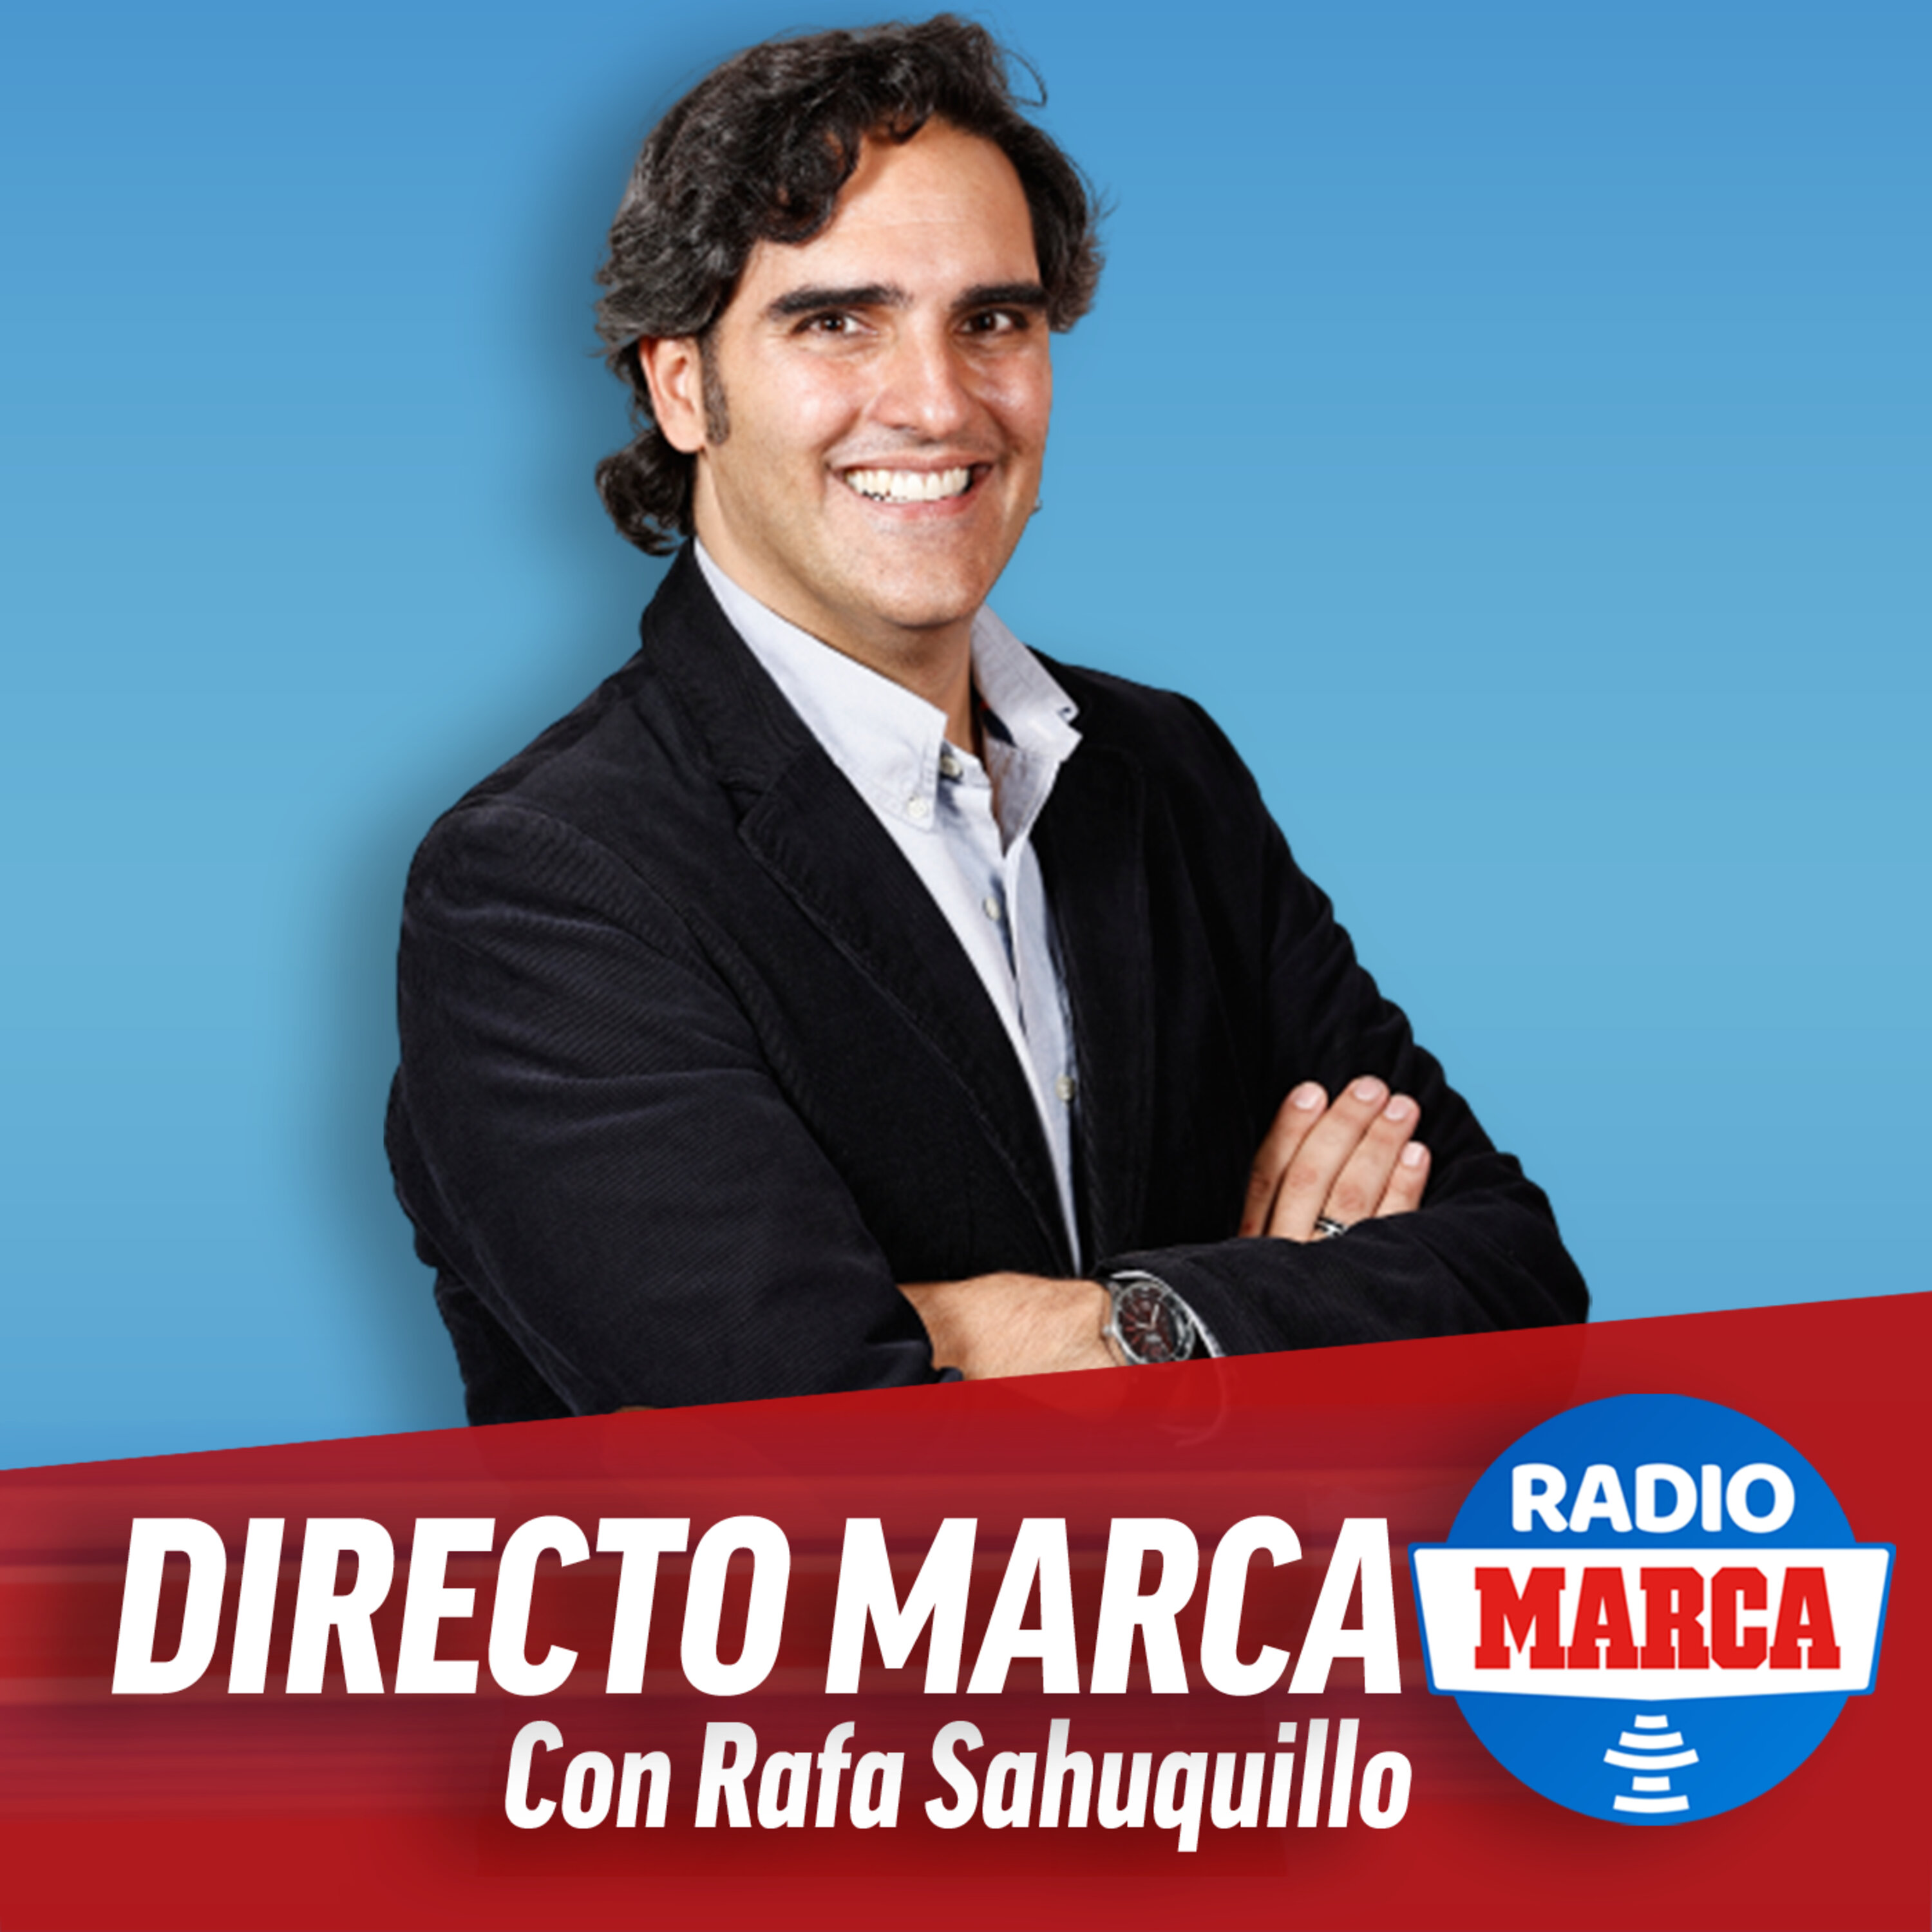 Directo MARCA con Rafa Sahuquillo (5/10/2021) 2:00pm